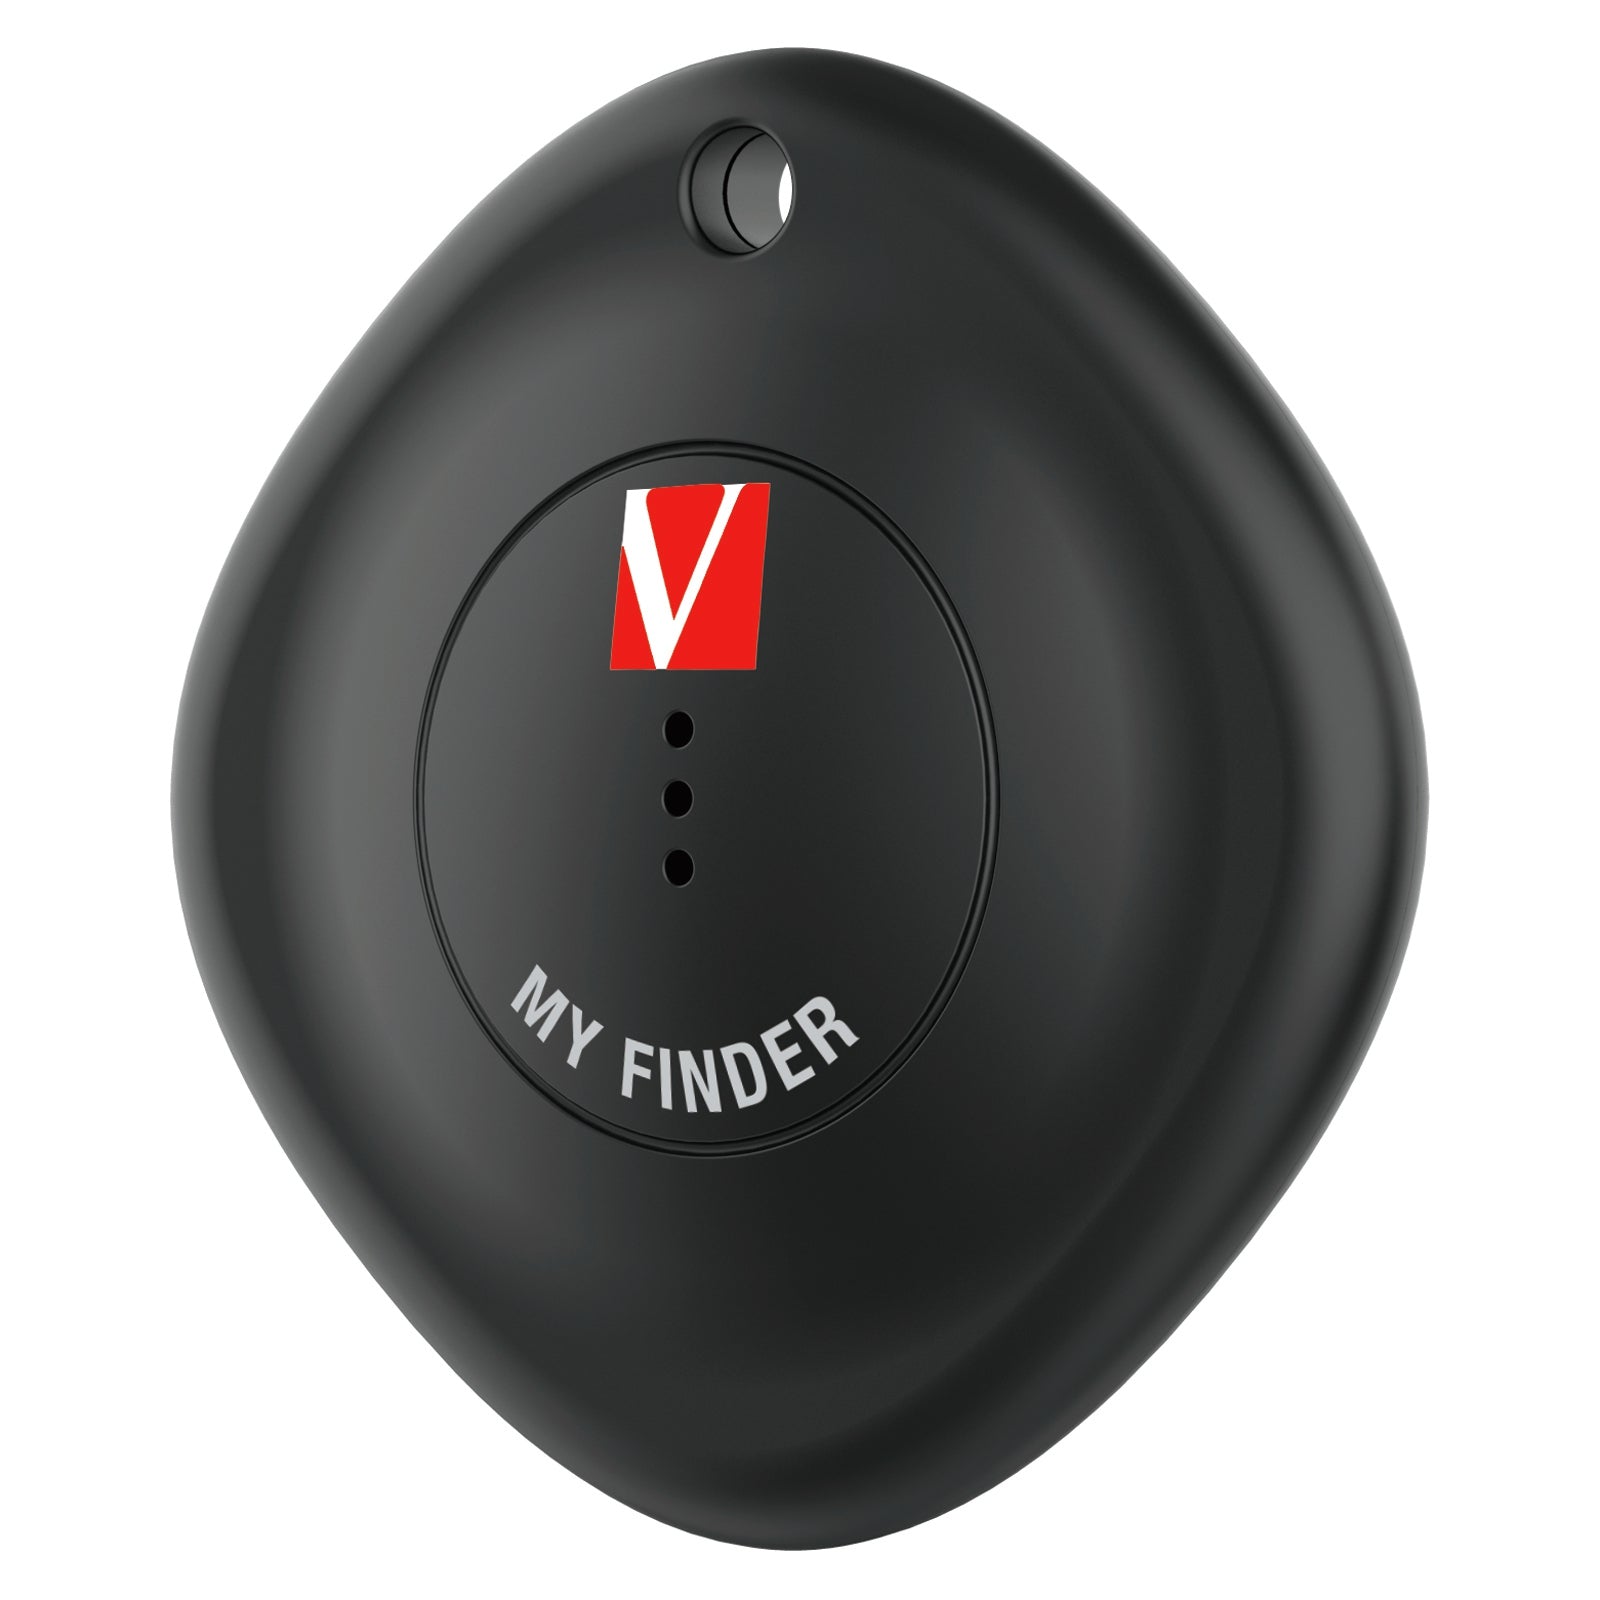 Localizador Verbatim My Finder Bluetooth 32130 Pieza Color Negro Sonido De Aviso Resistente Al Agua Y Polvo.